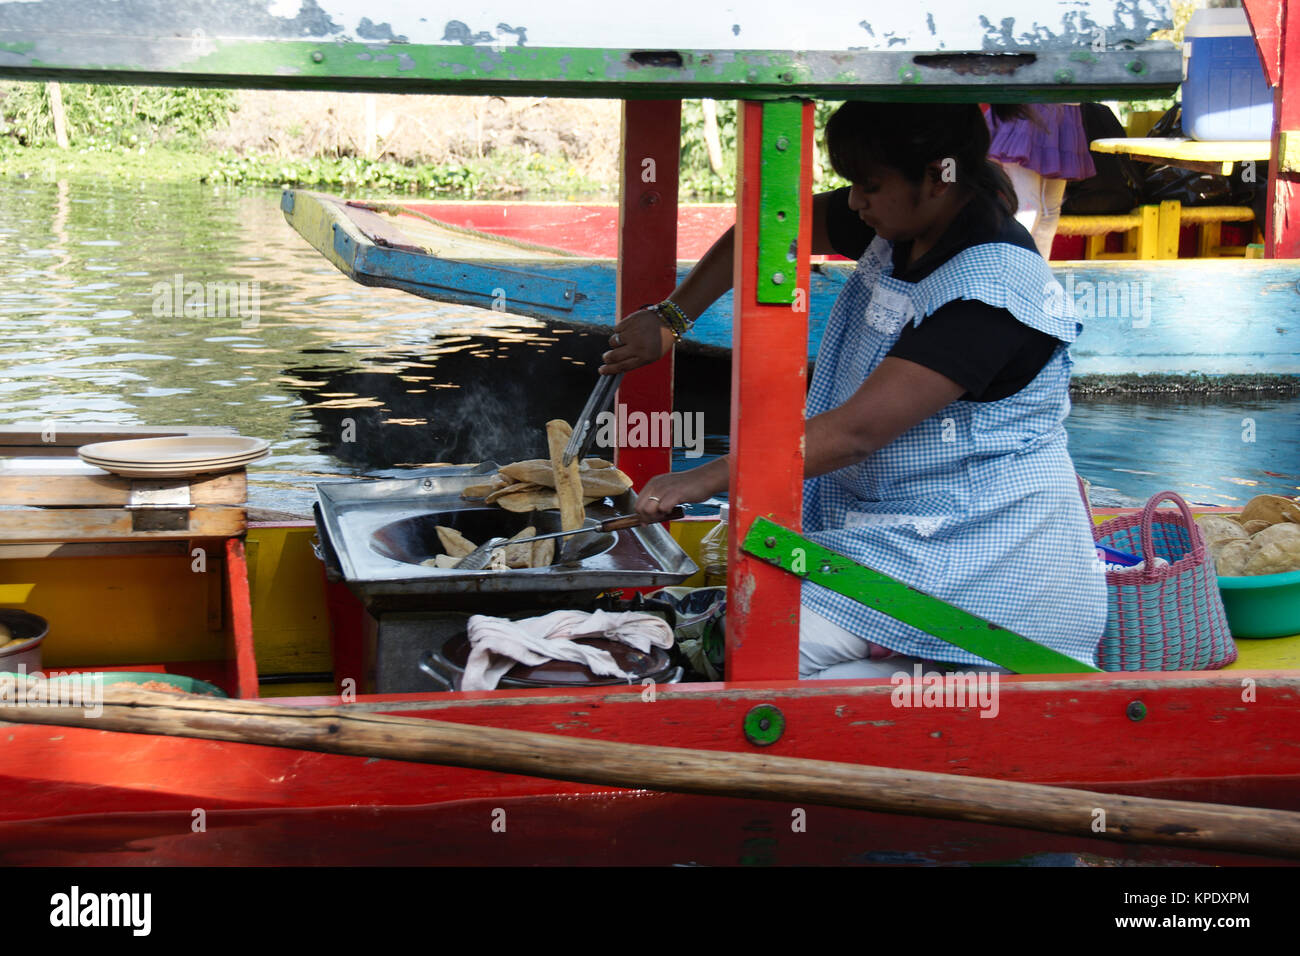 Xochimilco, Mexiko City, Mexiko - 2017: eine Frau auf einer trajinera (ein lokaler Art des Bootes) kocht und verkauft lokales Essen von Menschen in anderen trajineras Stockfoto